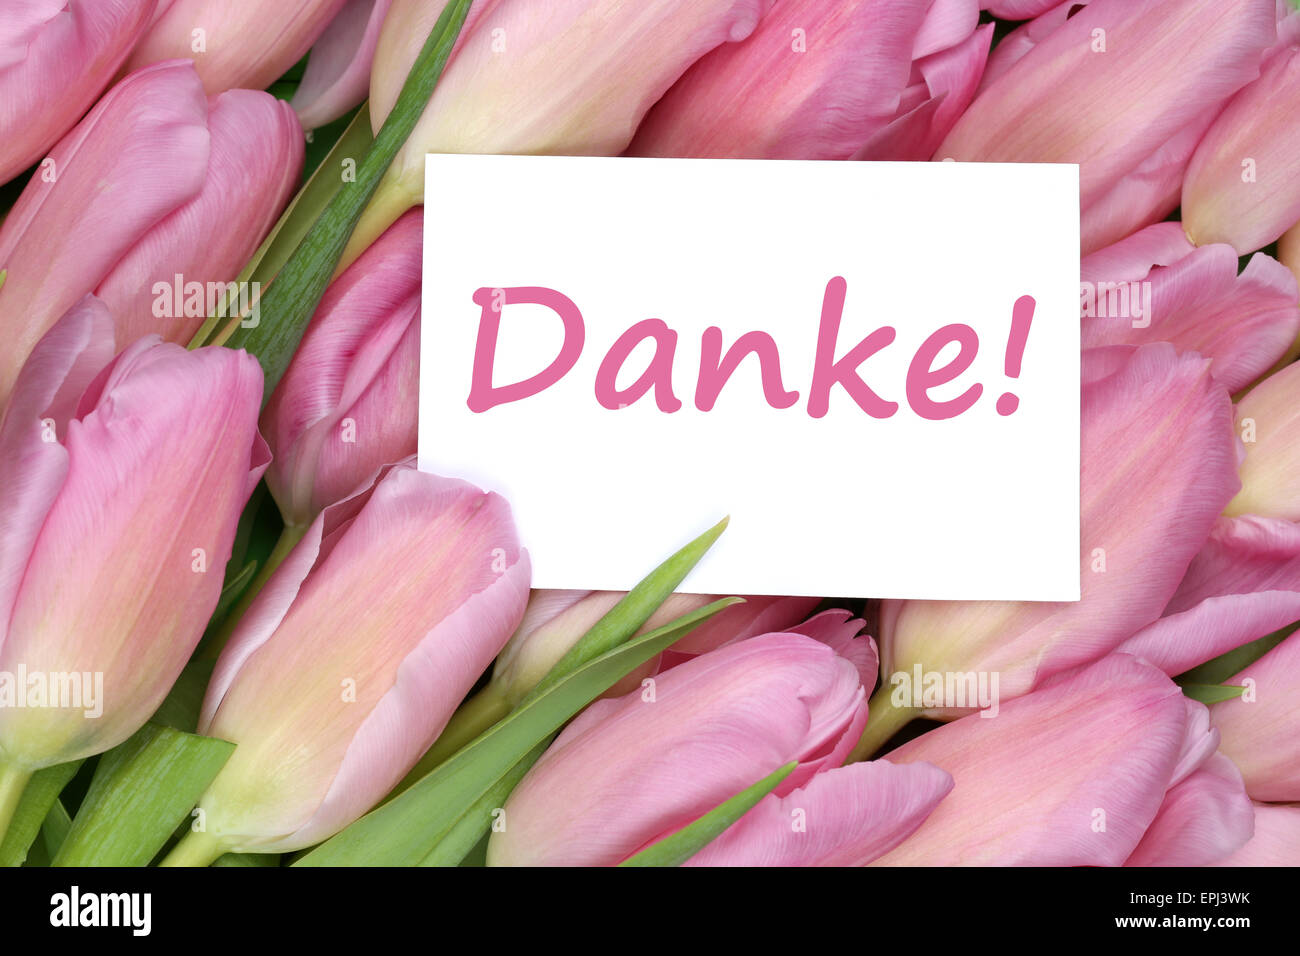 Danke Geschenk Karte mit Tulpen Blumen Stock Photo - Alamy